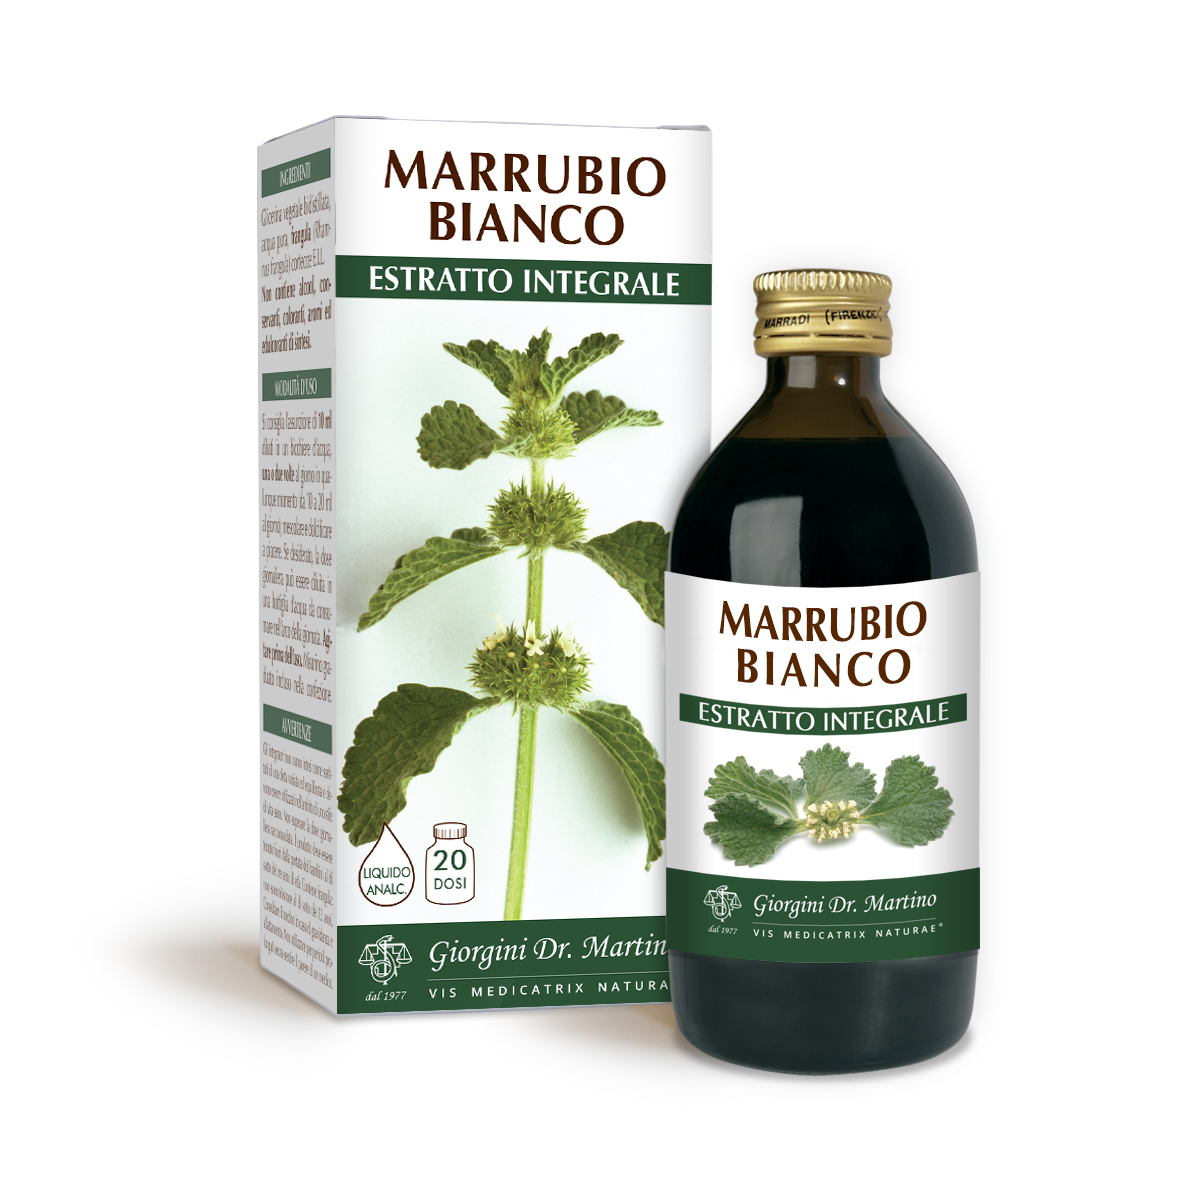 MARRUBIO BIANCO ESTRATTO INTEGRALE 200 ml